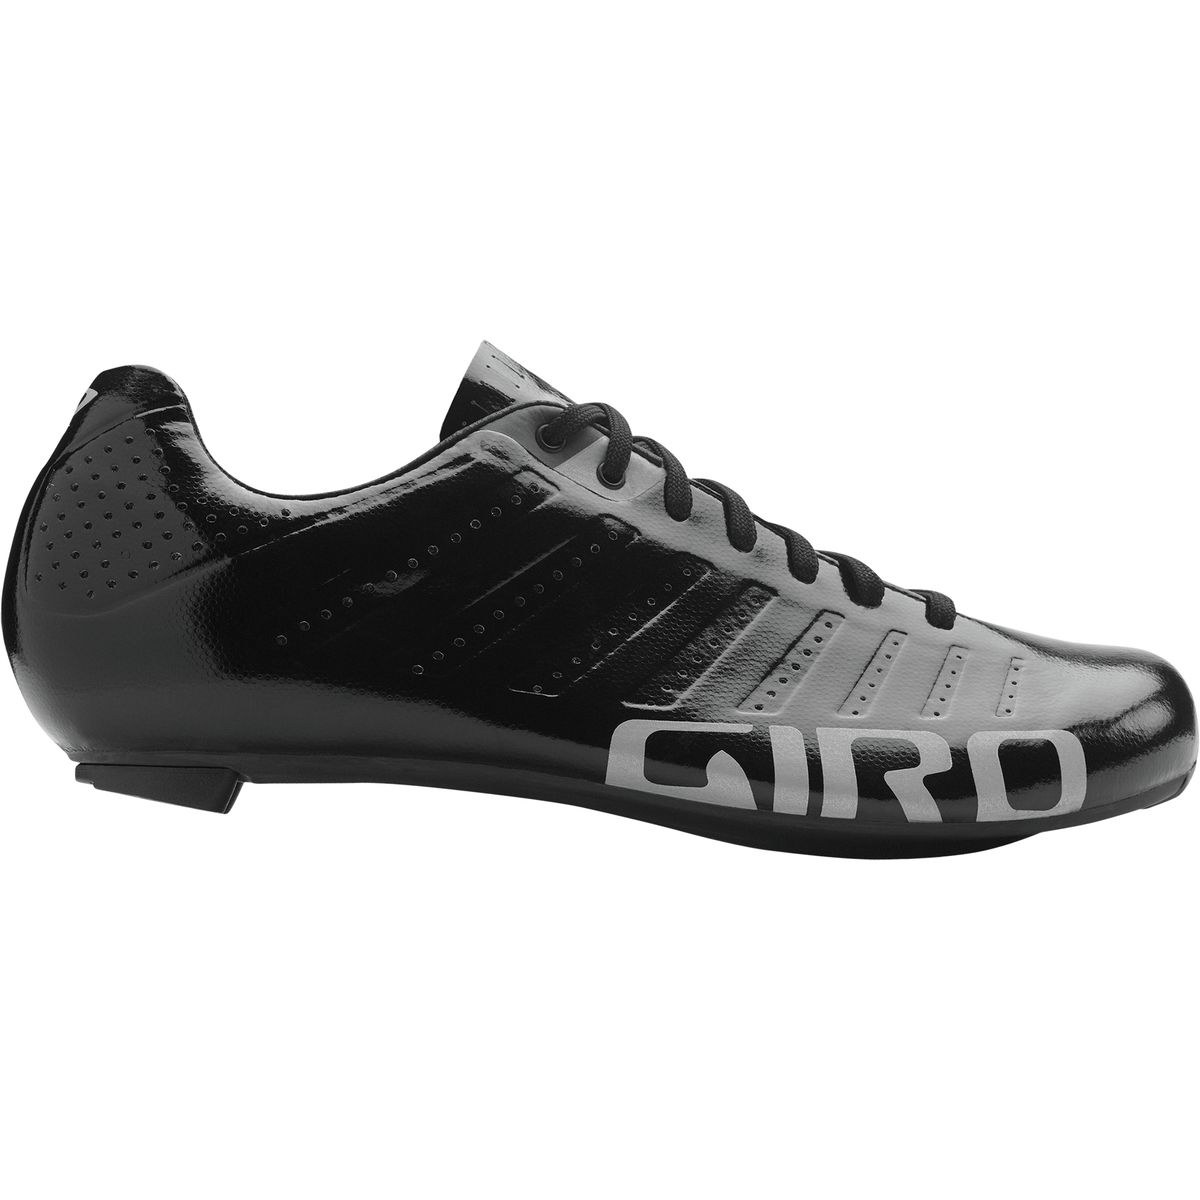 Giro Empire SLX road shoes - BikeRadar